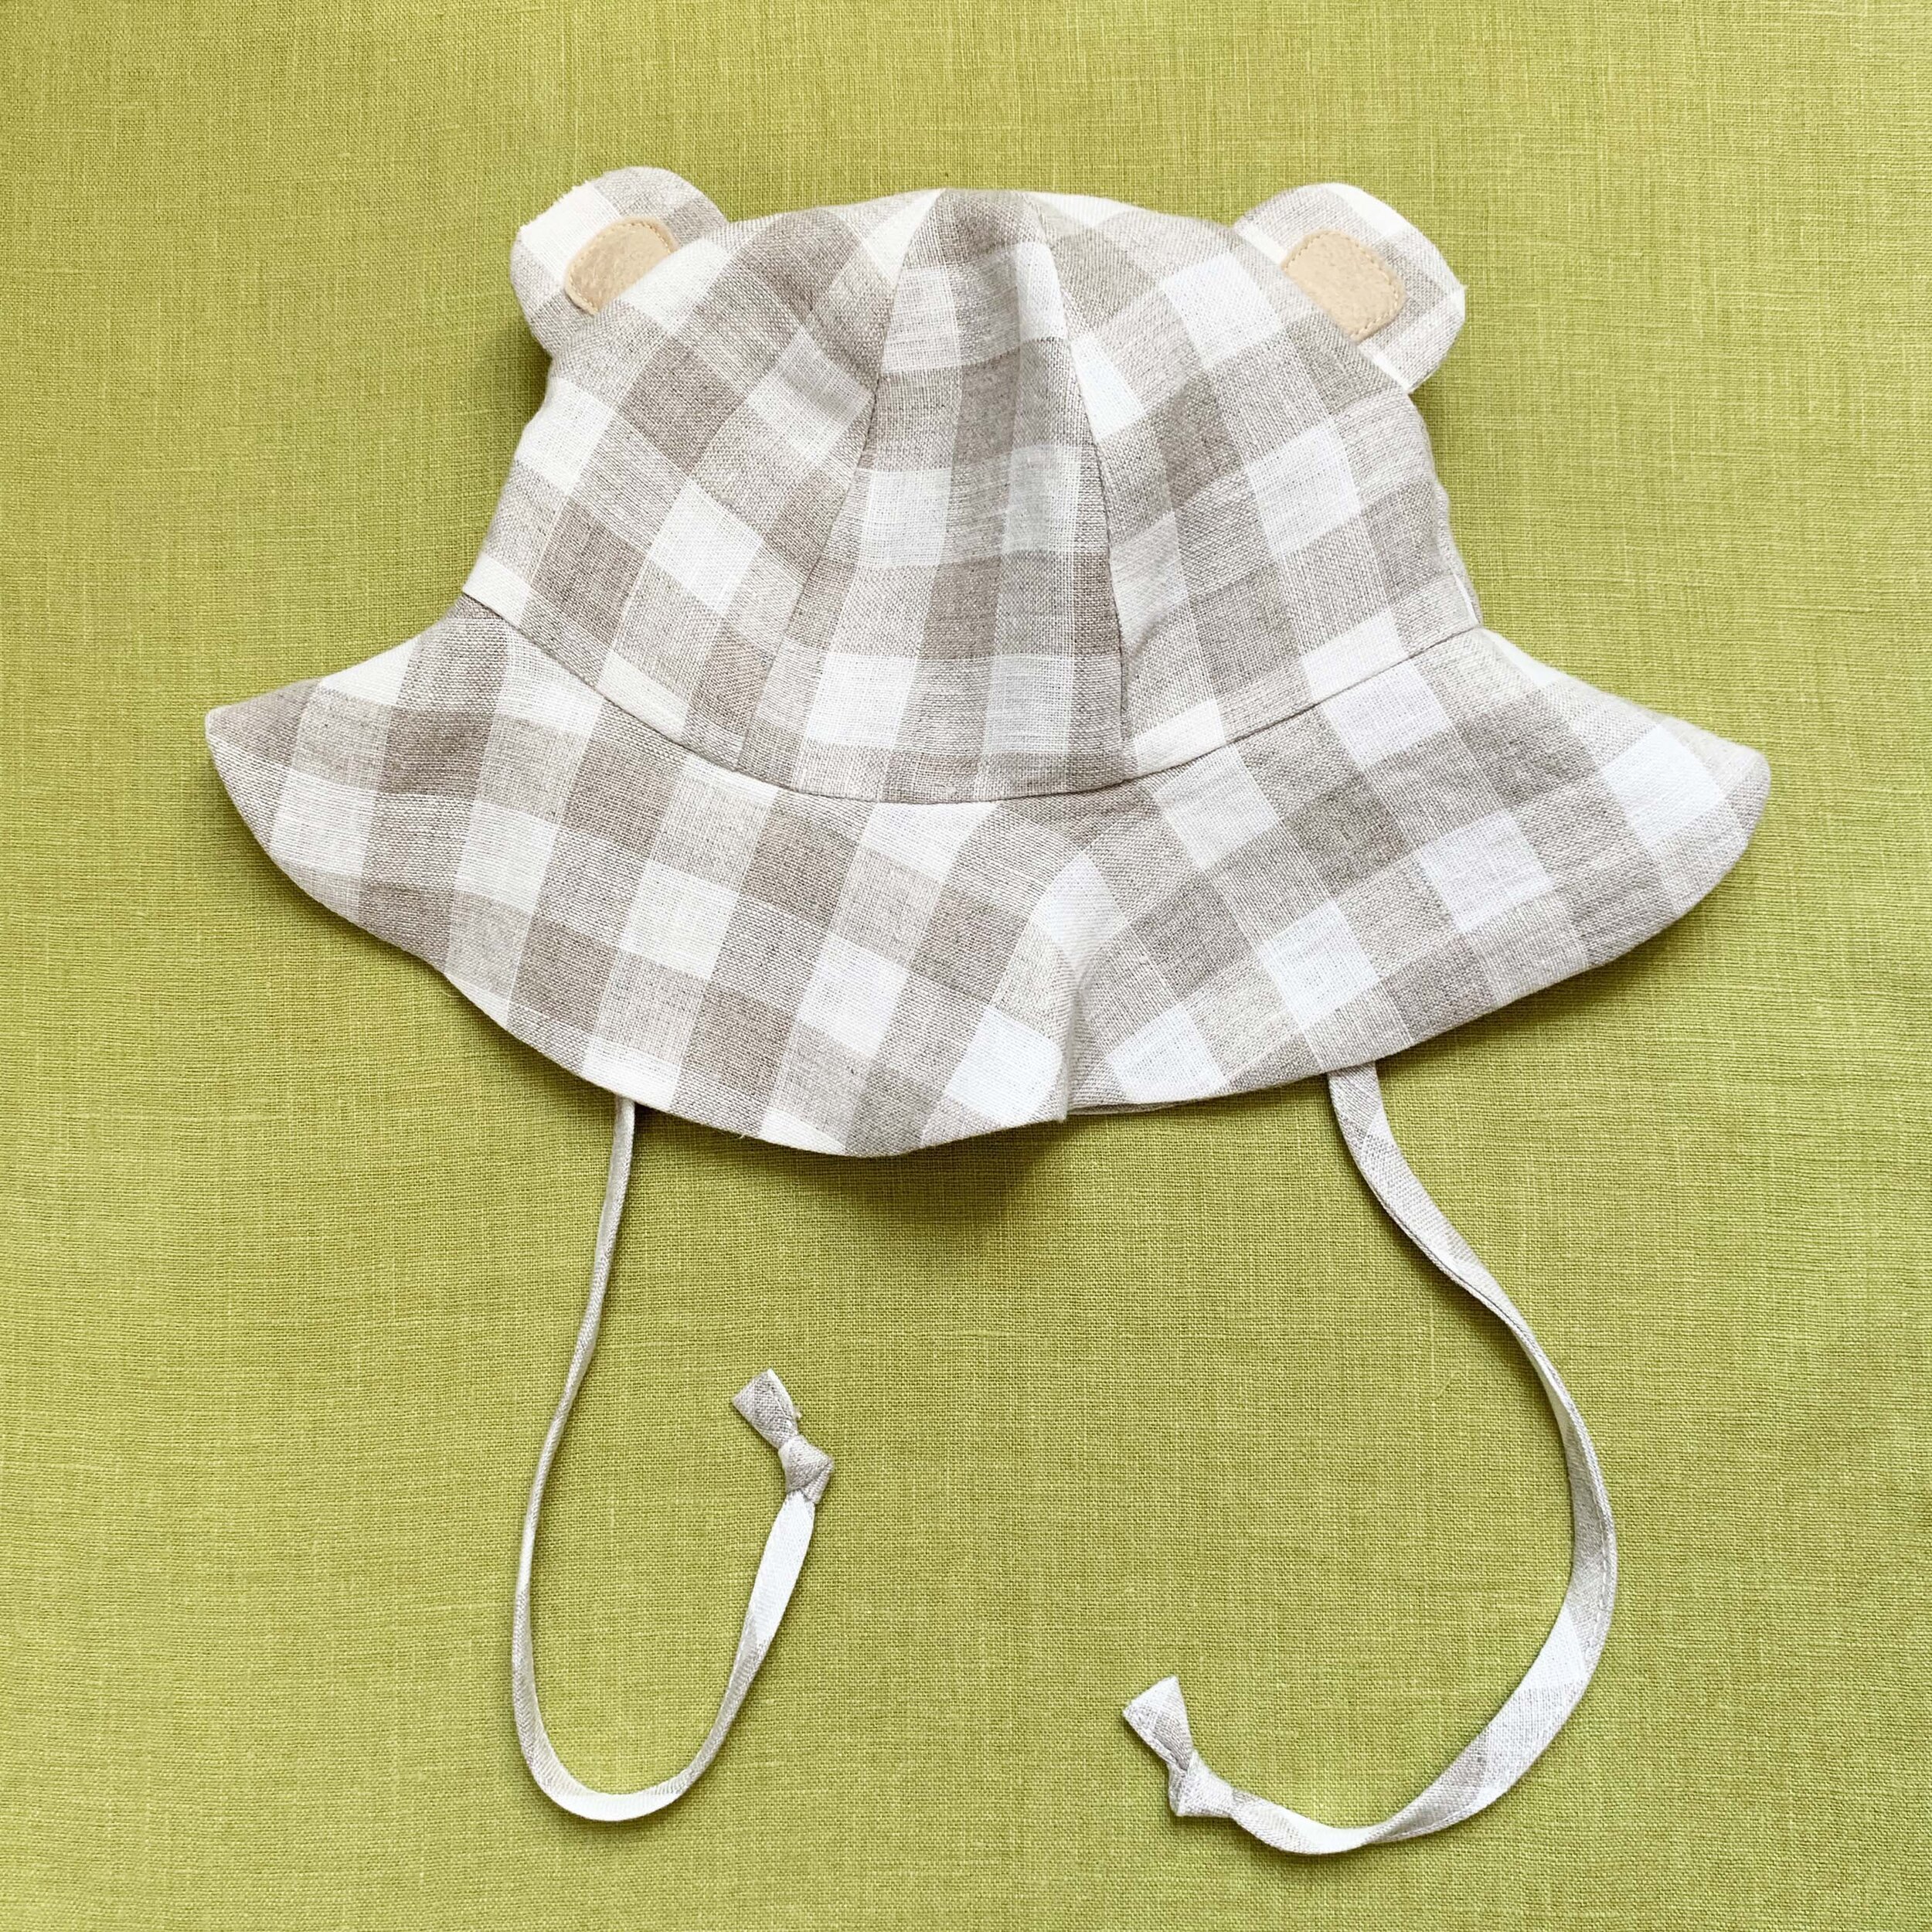 Bear ear sunshine hat sewing pattern